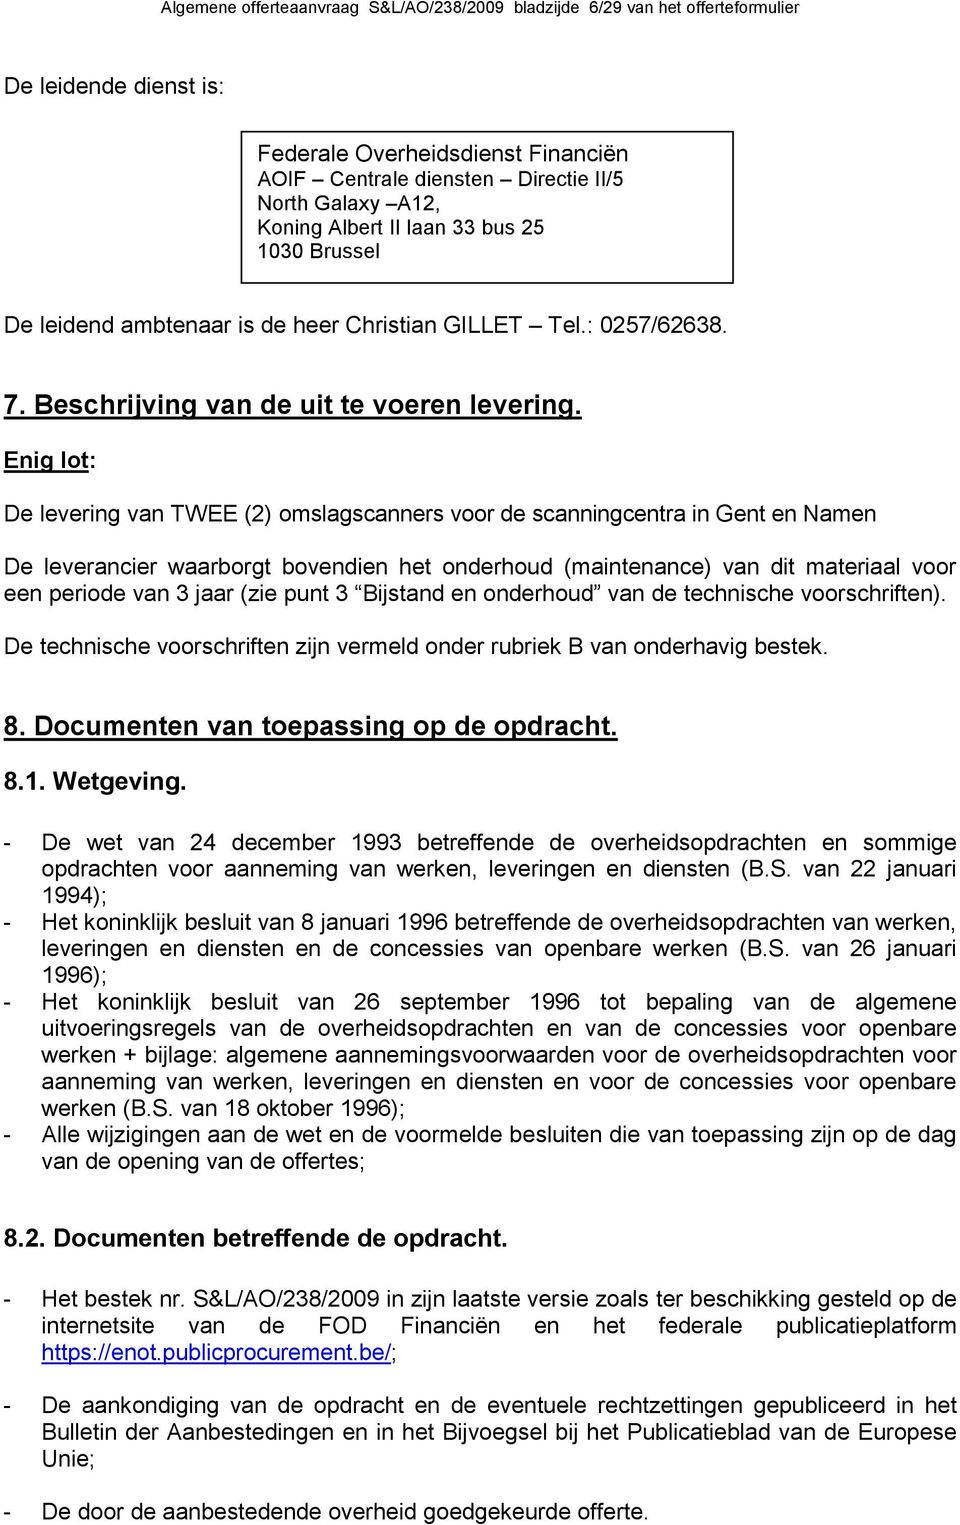 Enig lot: De levering van TWEE (2) omslagscanners voor de scanningcentra in Gent en Namen De leverancier waarborgt bovendien het onderhoud (maintenance) van dit materiaal voor een periode van 3 jaar